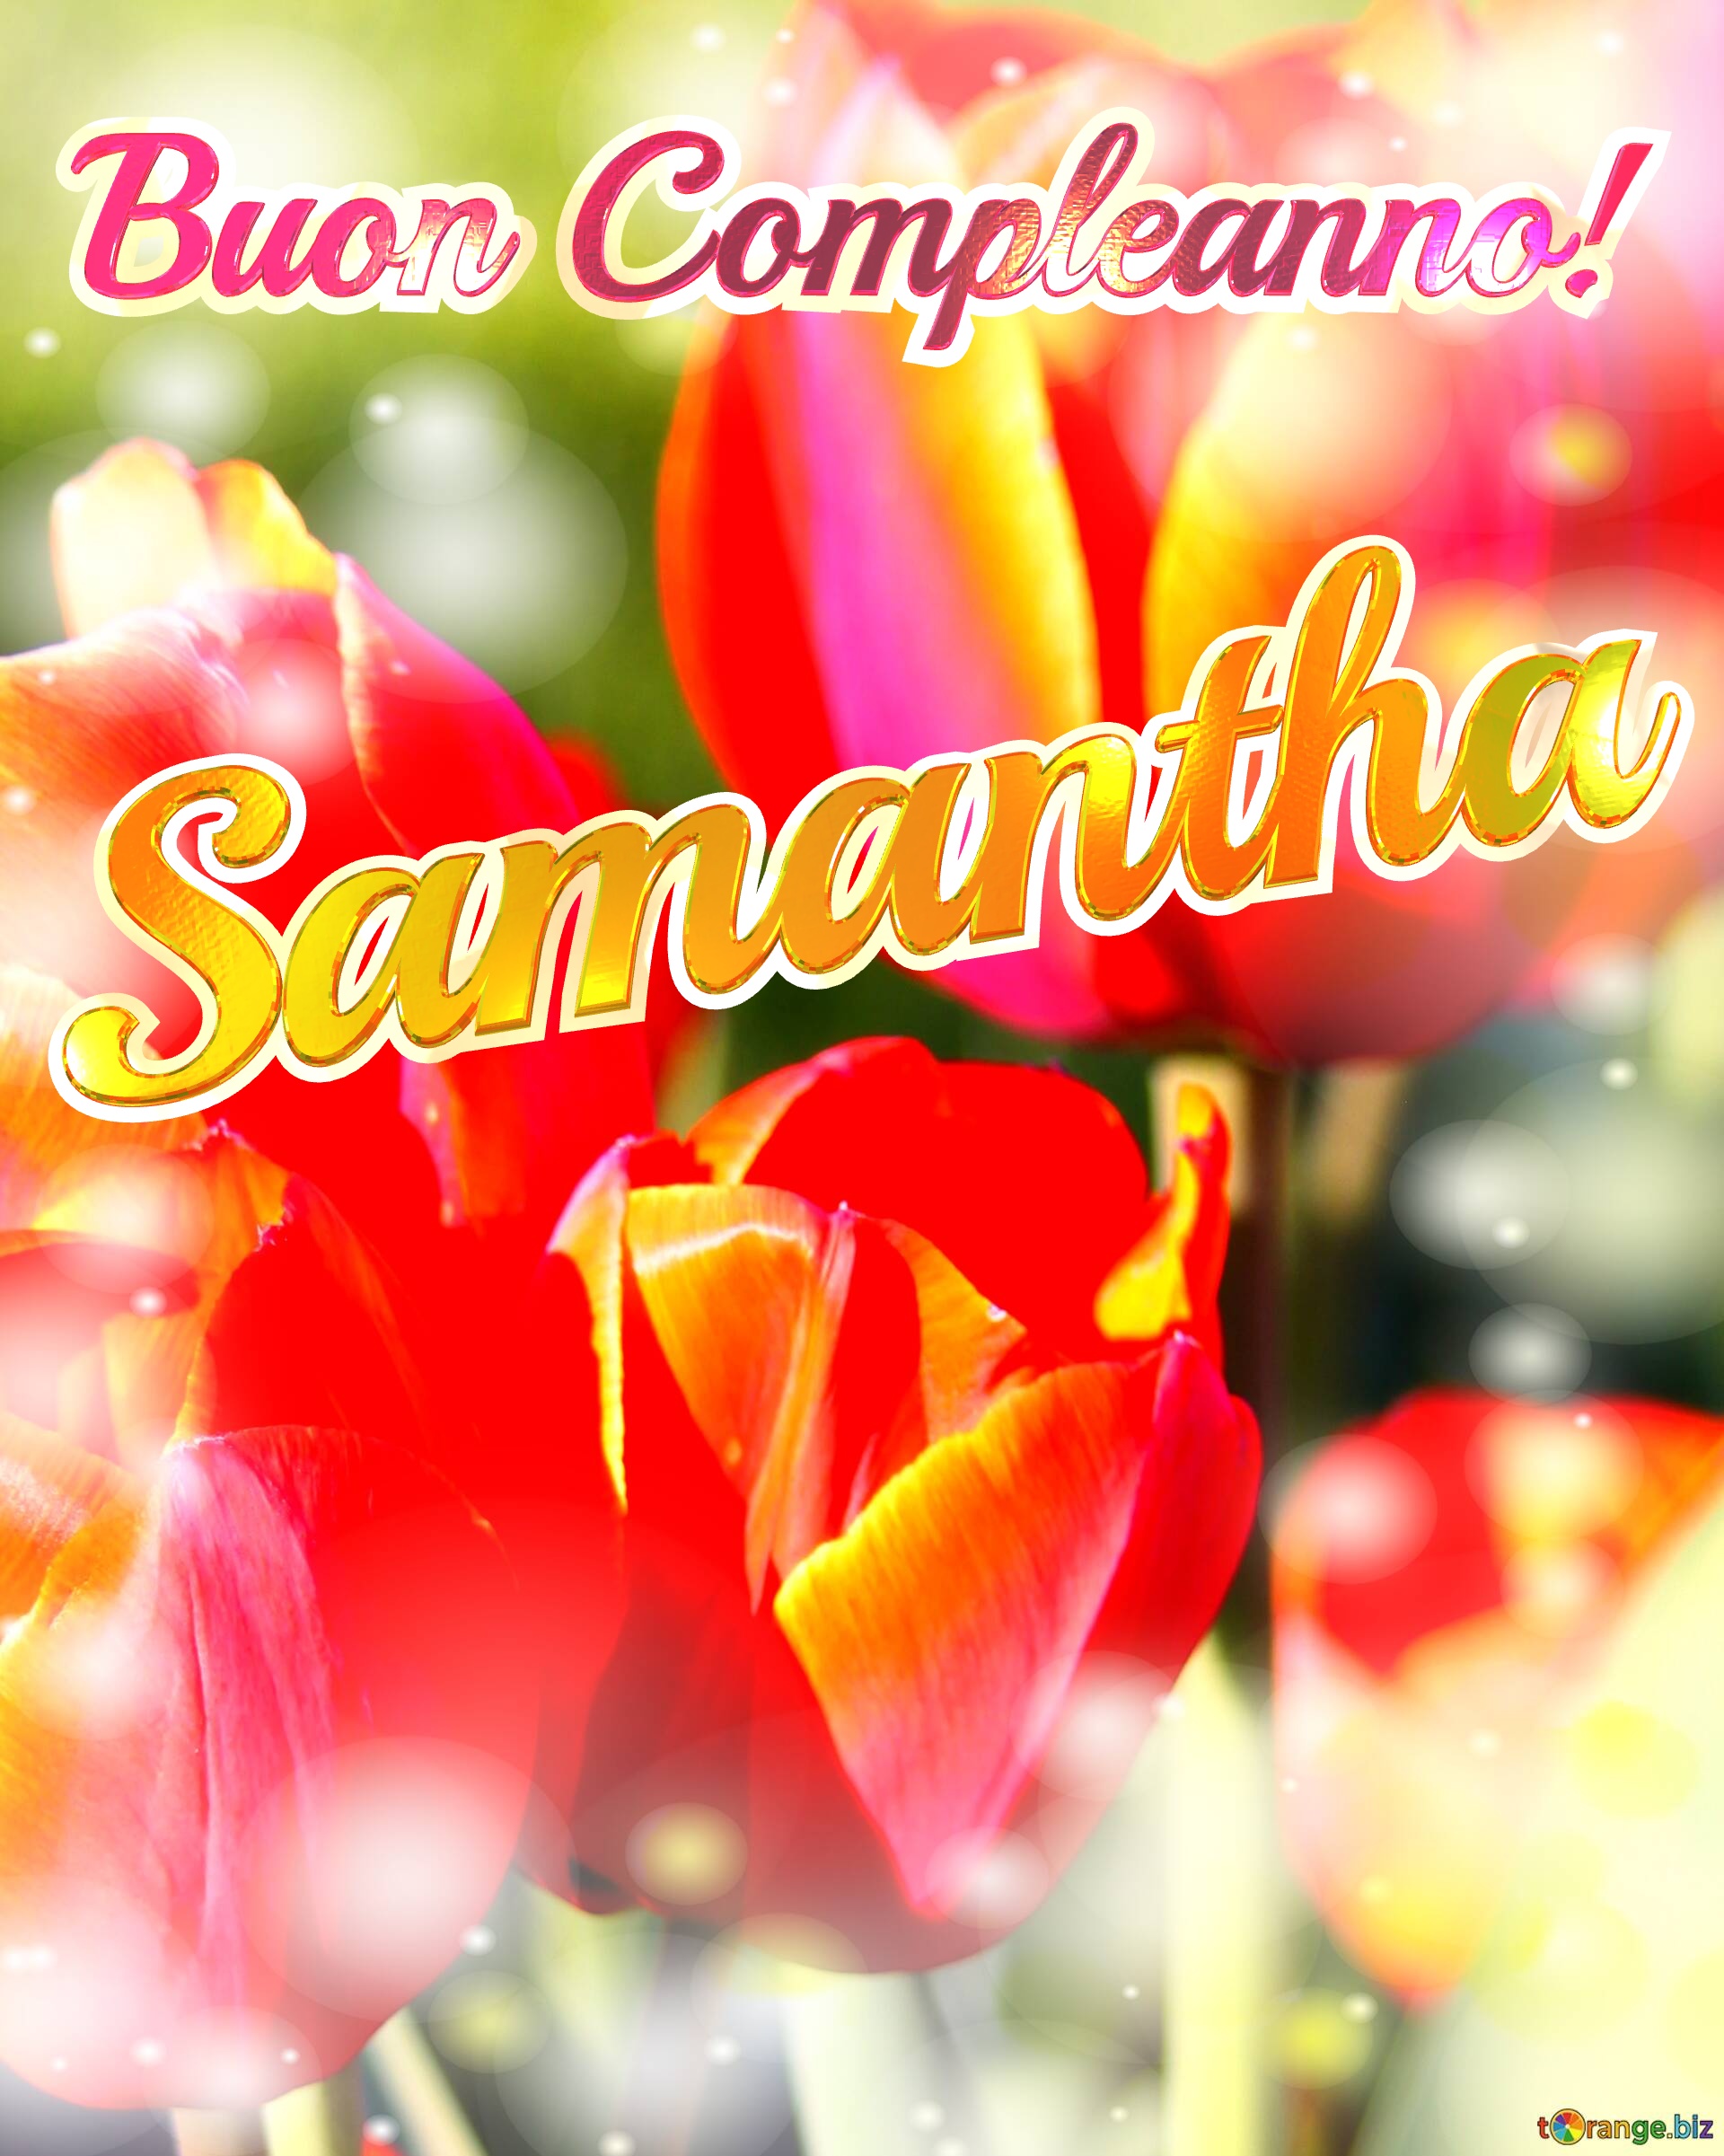 Buon Compleanno! Samantha  La bellezza dei tulipani è un richiamo alla bellezza della vita, auguri per una vita piena di bellezza e soddisfazione. №0